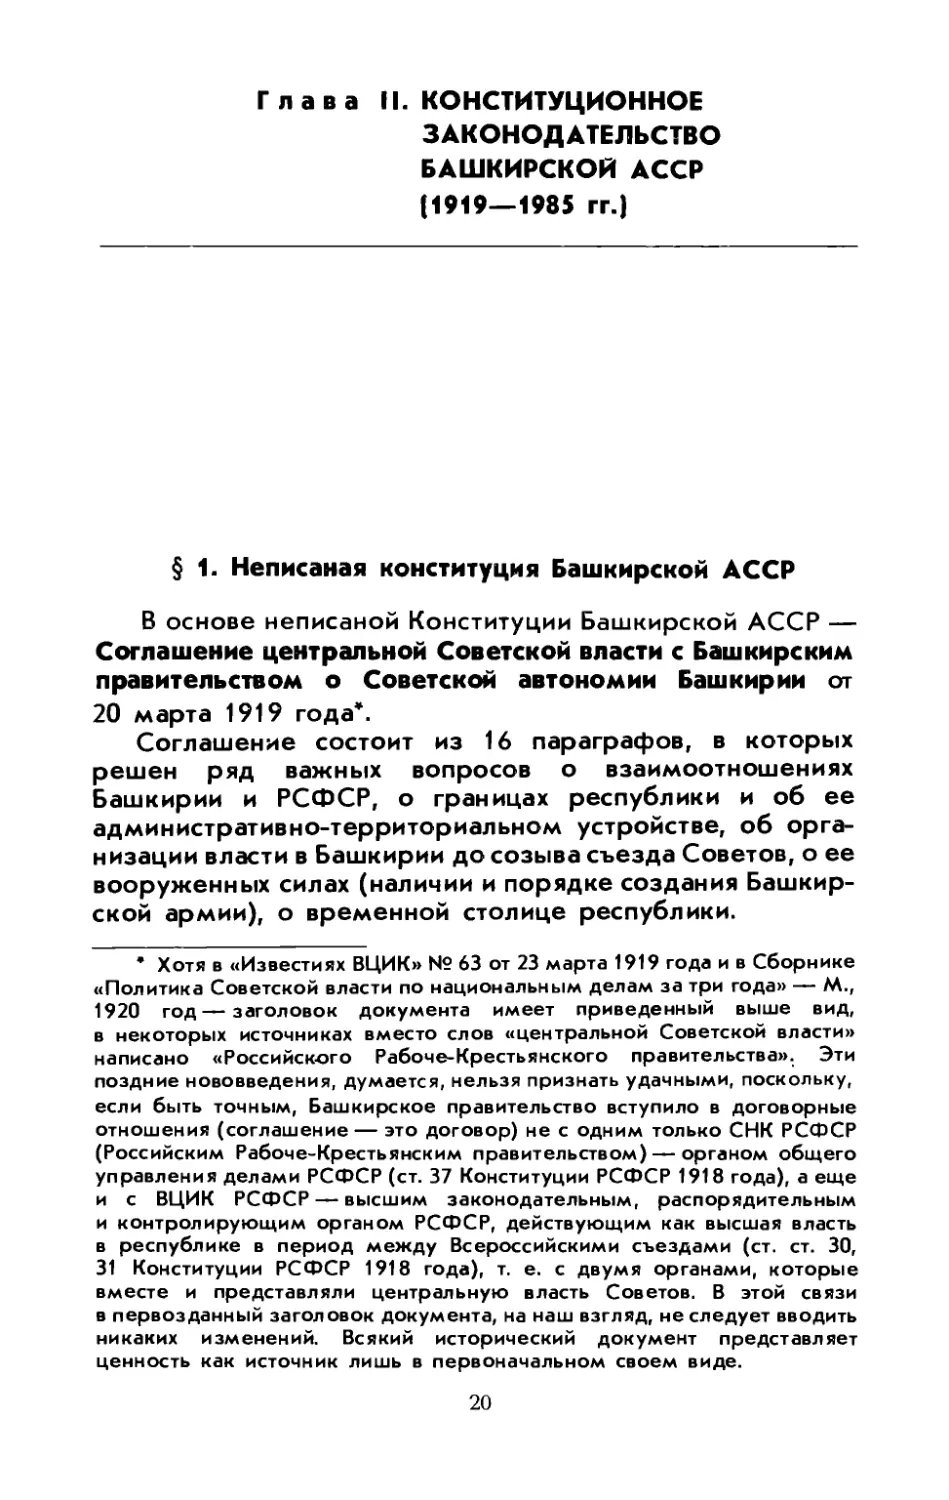 § 1. Неписаная Конституция Башкирской АССР